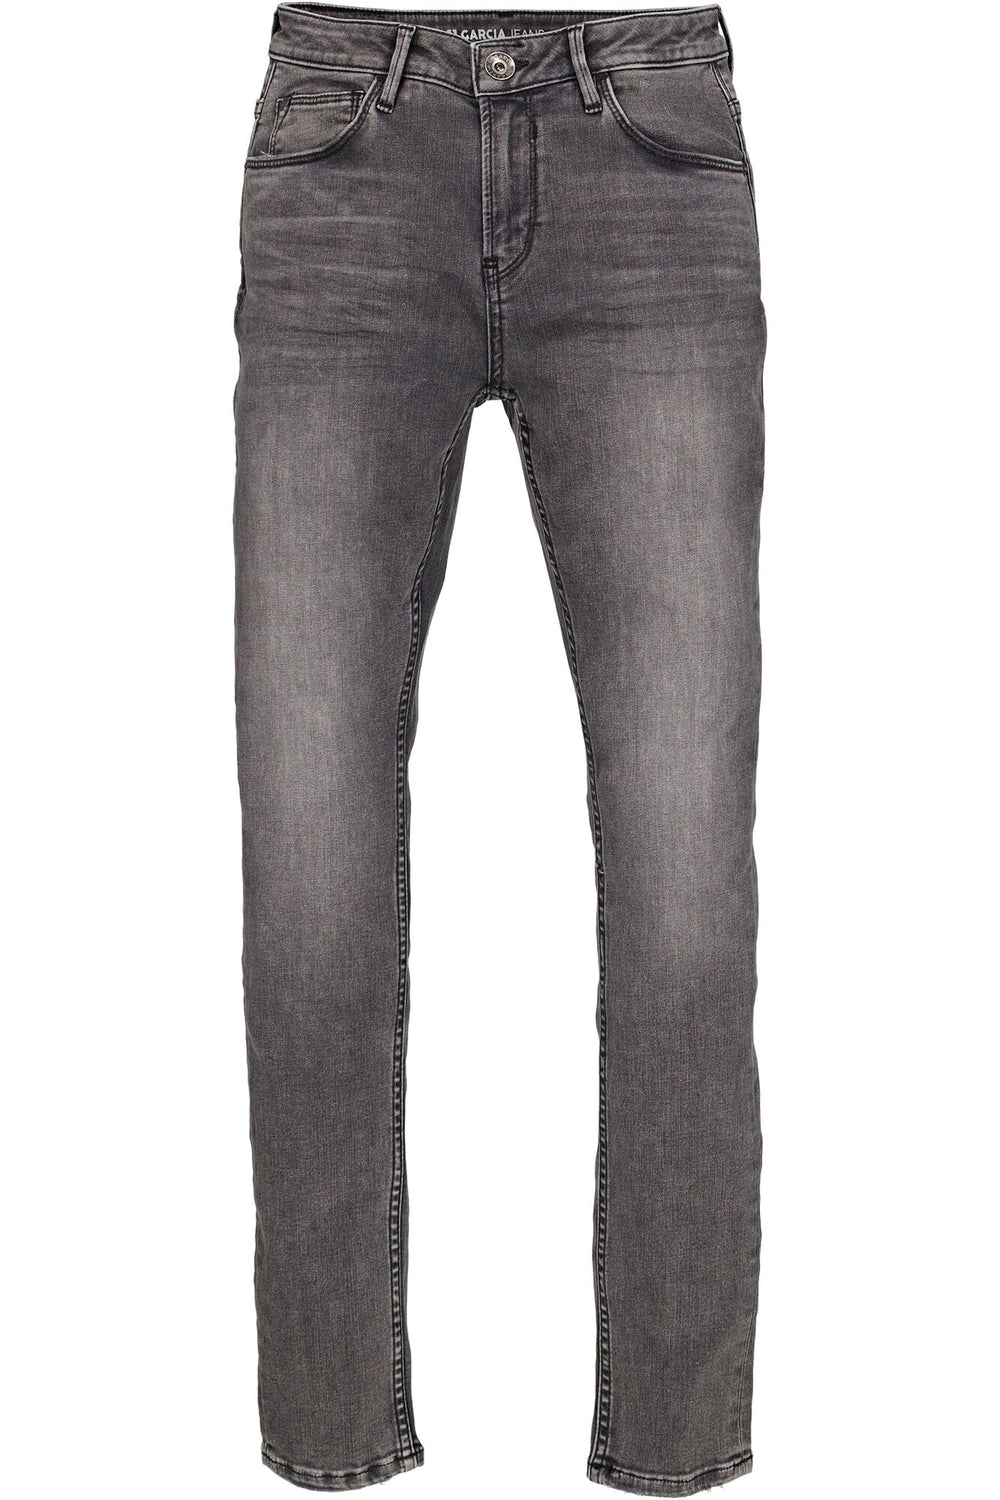 Garcia Jeans - Celia Superslim Fit Jeans i Medium Used Grey